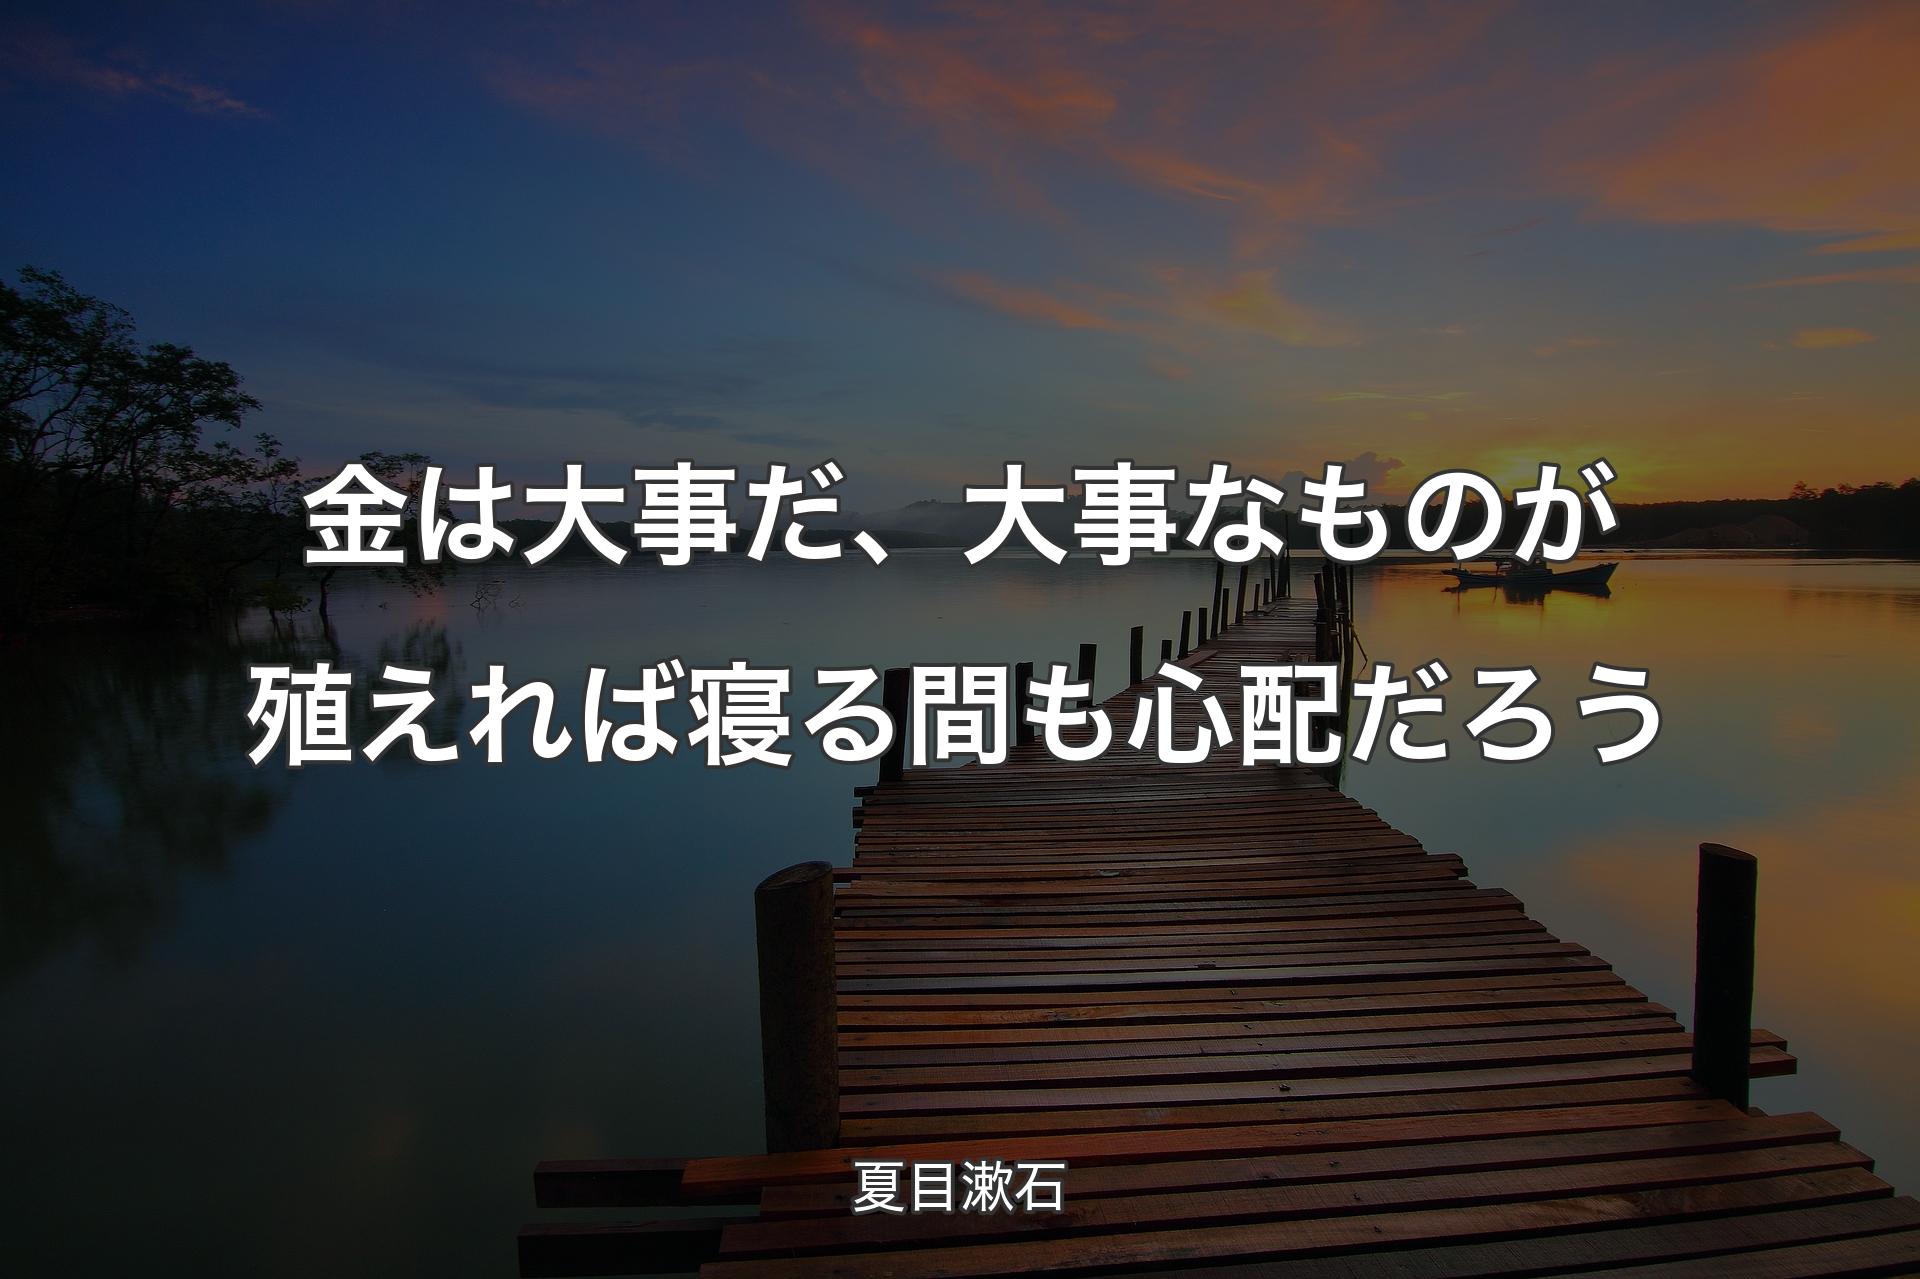 【背景3】金は大事だ、大事なものが殖えれば寝る間も心配だろう - 夏目漱石